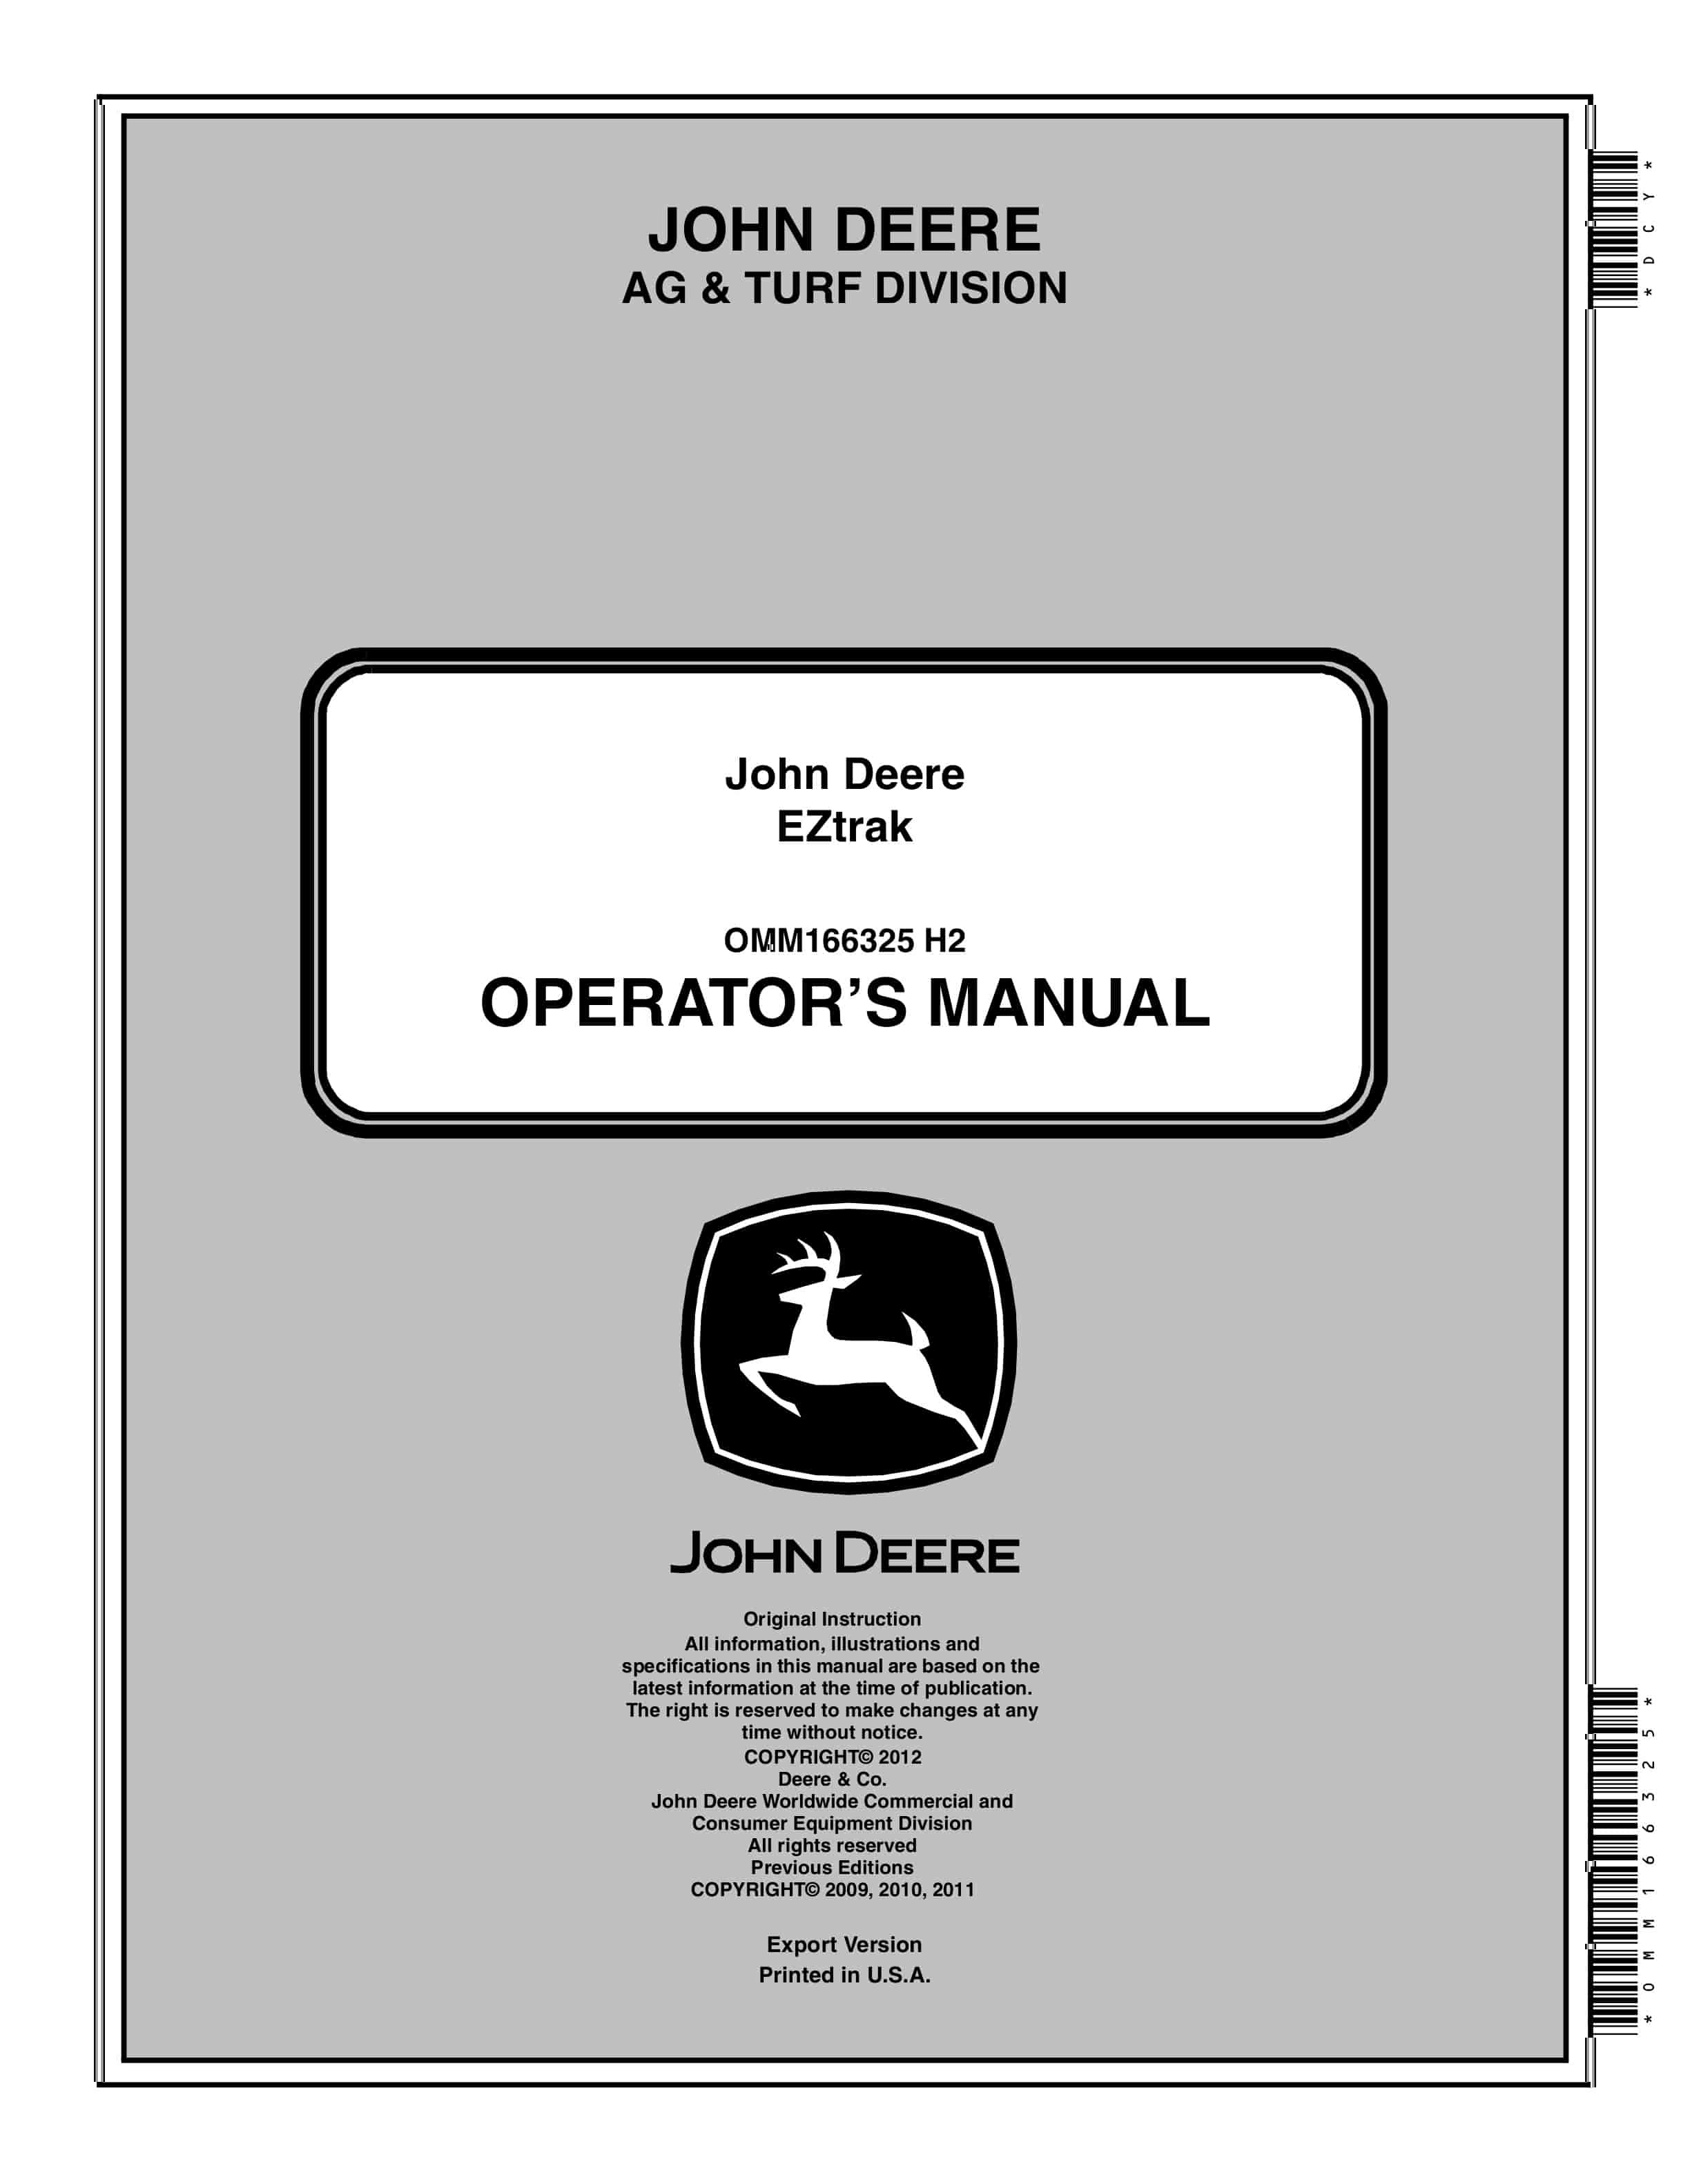 John Deere EZtrak Operator Manual OMM166325 1